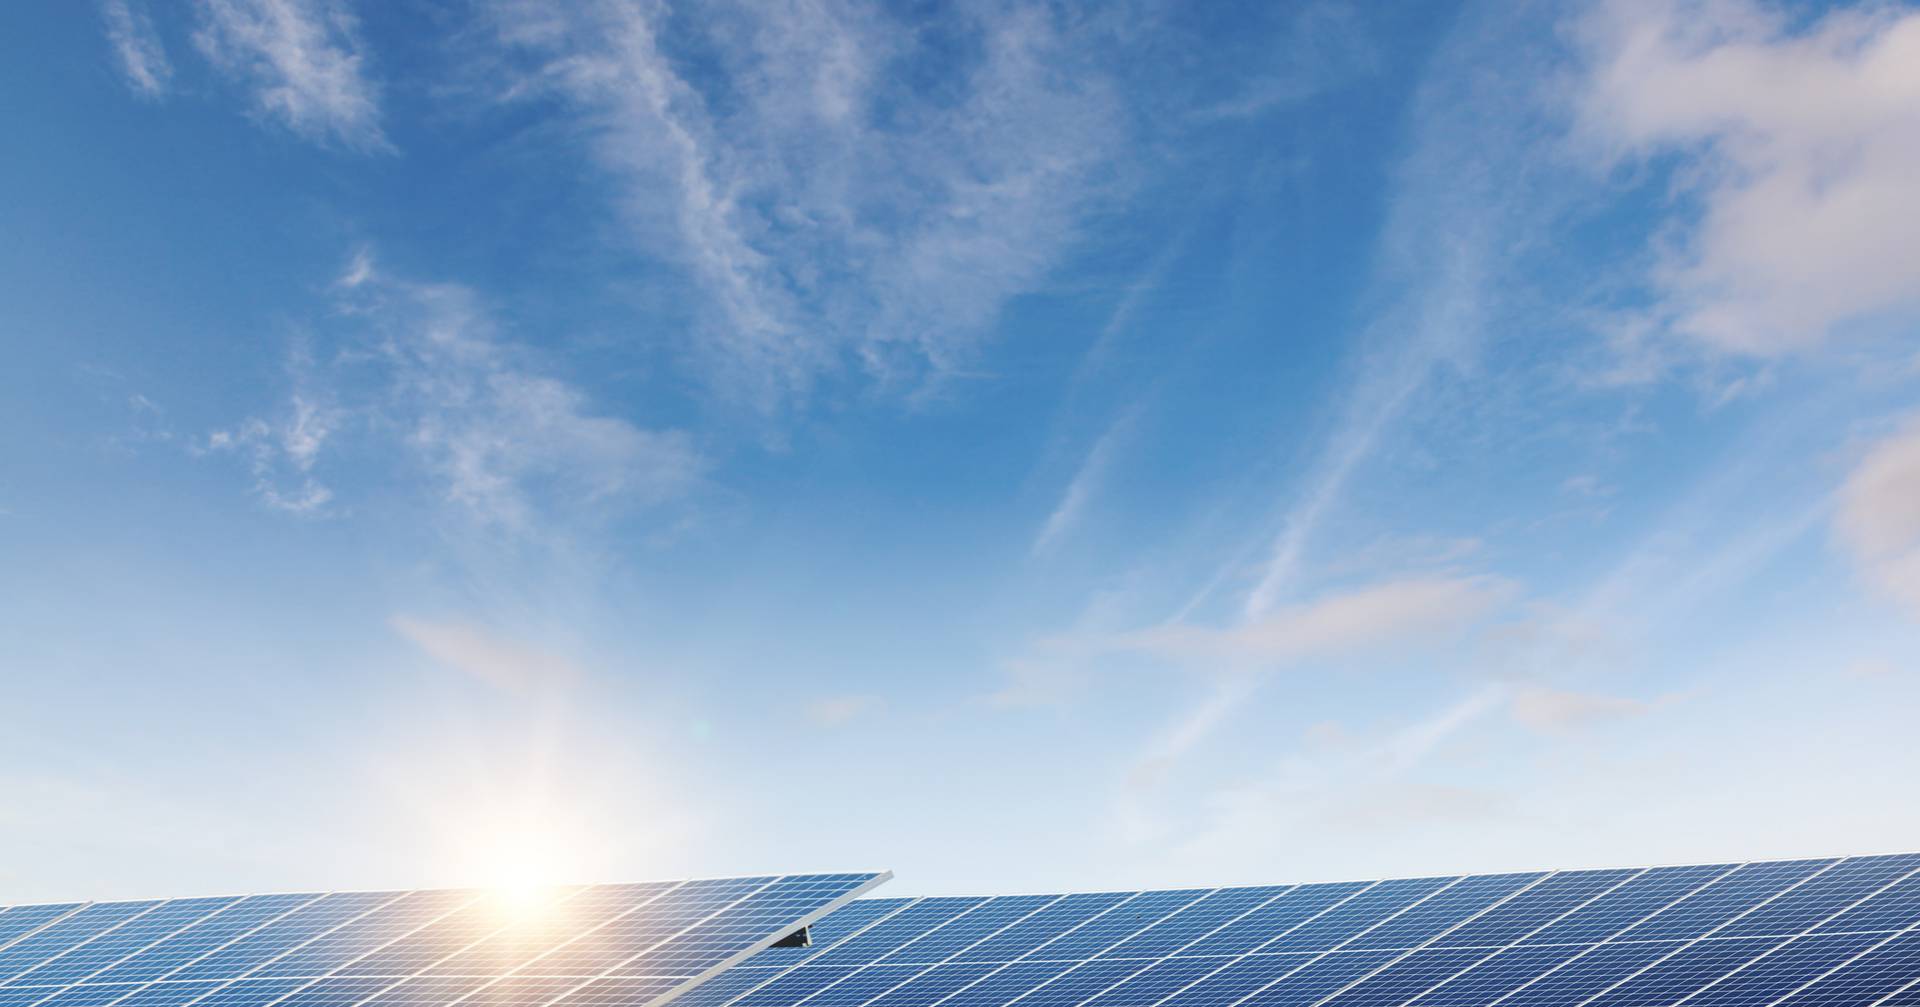 Das deutsche Unternehmen RWE hat mit dem Bau eines 44-MW-Solarkraftwerks in Sines begonnen